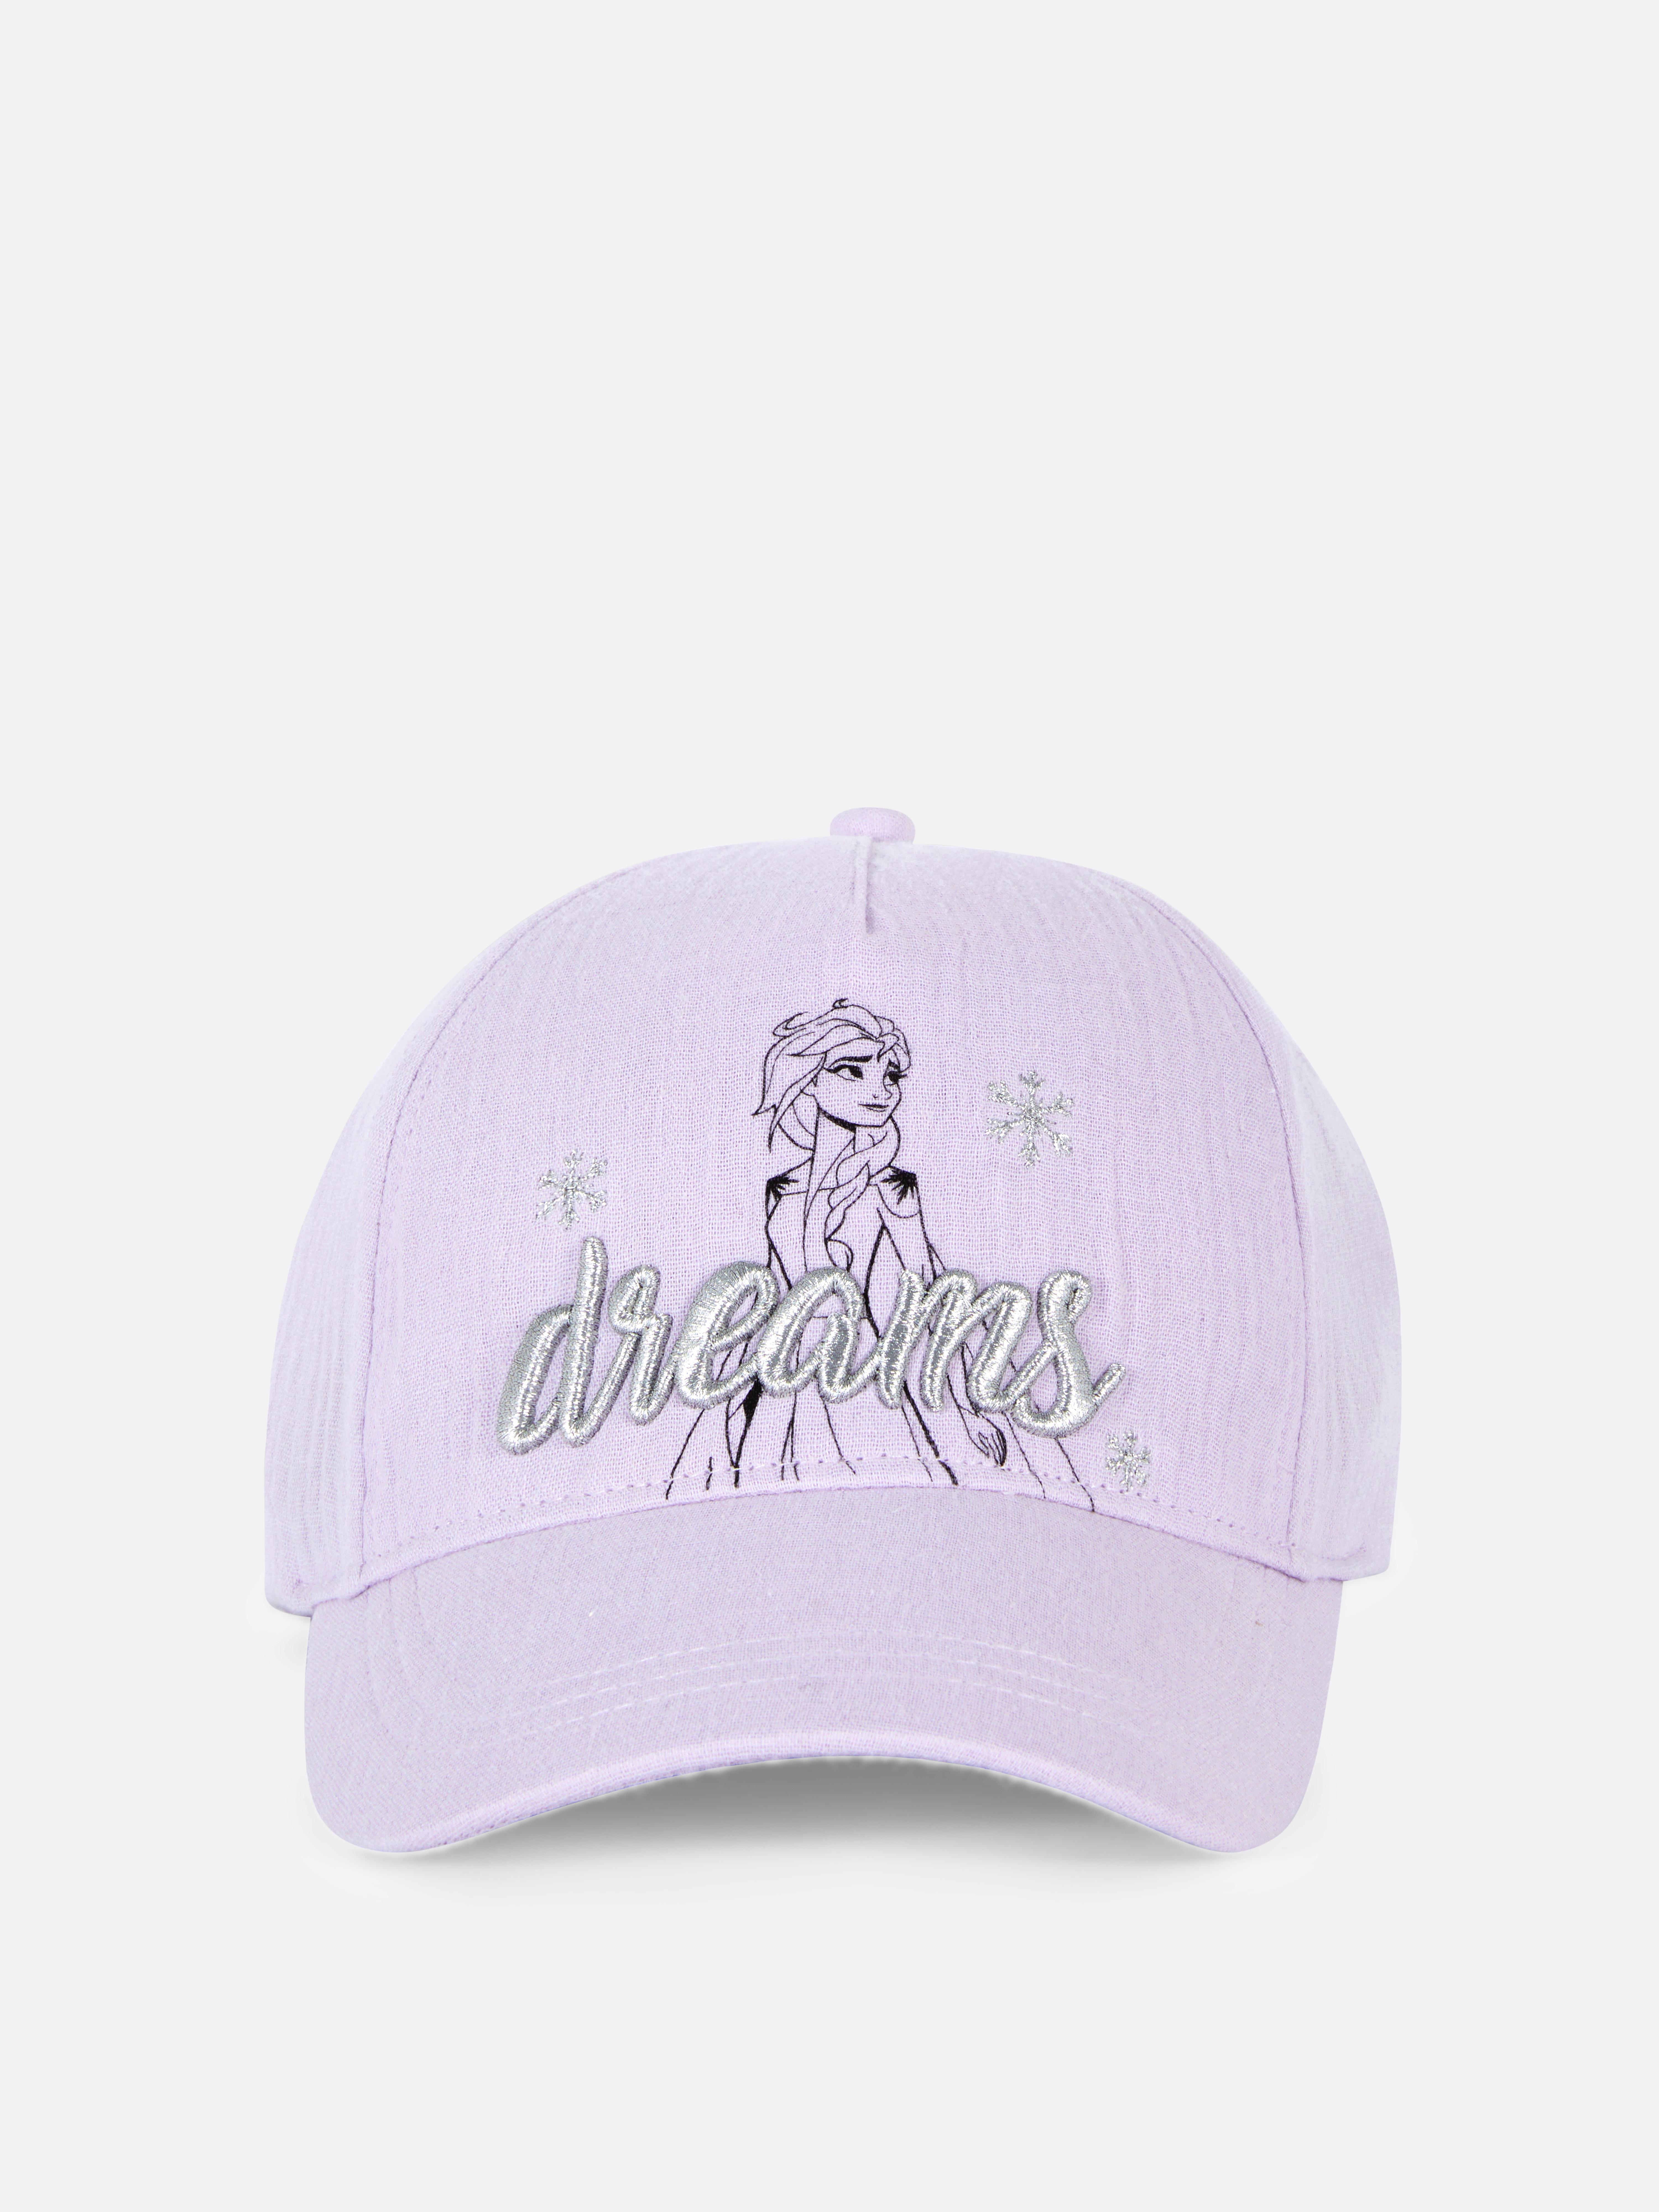 Disney’s Frozen Elsa Baseball Cap